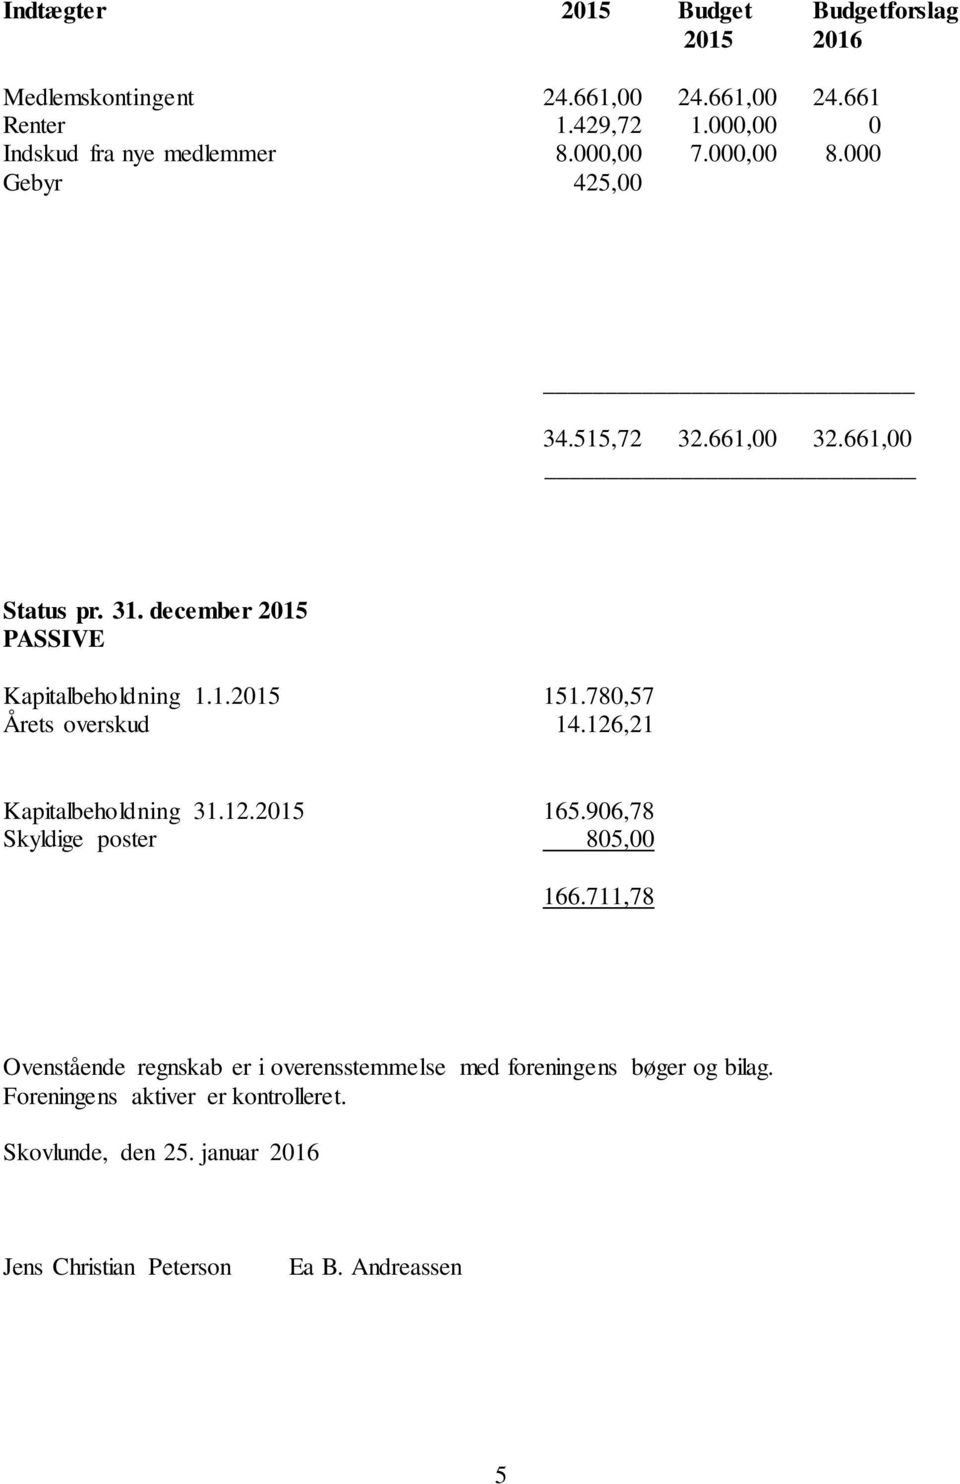 december 2015 PASSIVE Kapitalbeholdning 1.1.2015 151.780,57 Årets overskud 14.126,21 Kapitalbeholdning 31.12.2015 165.